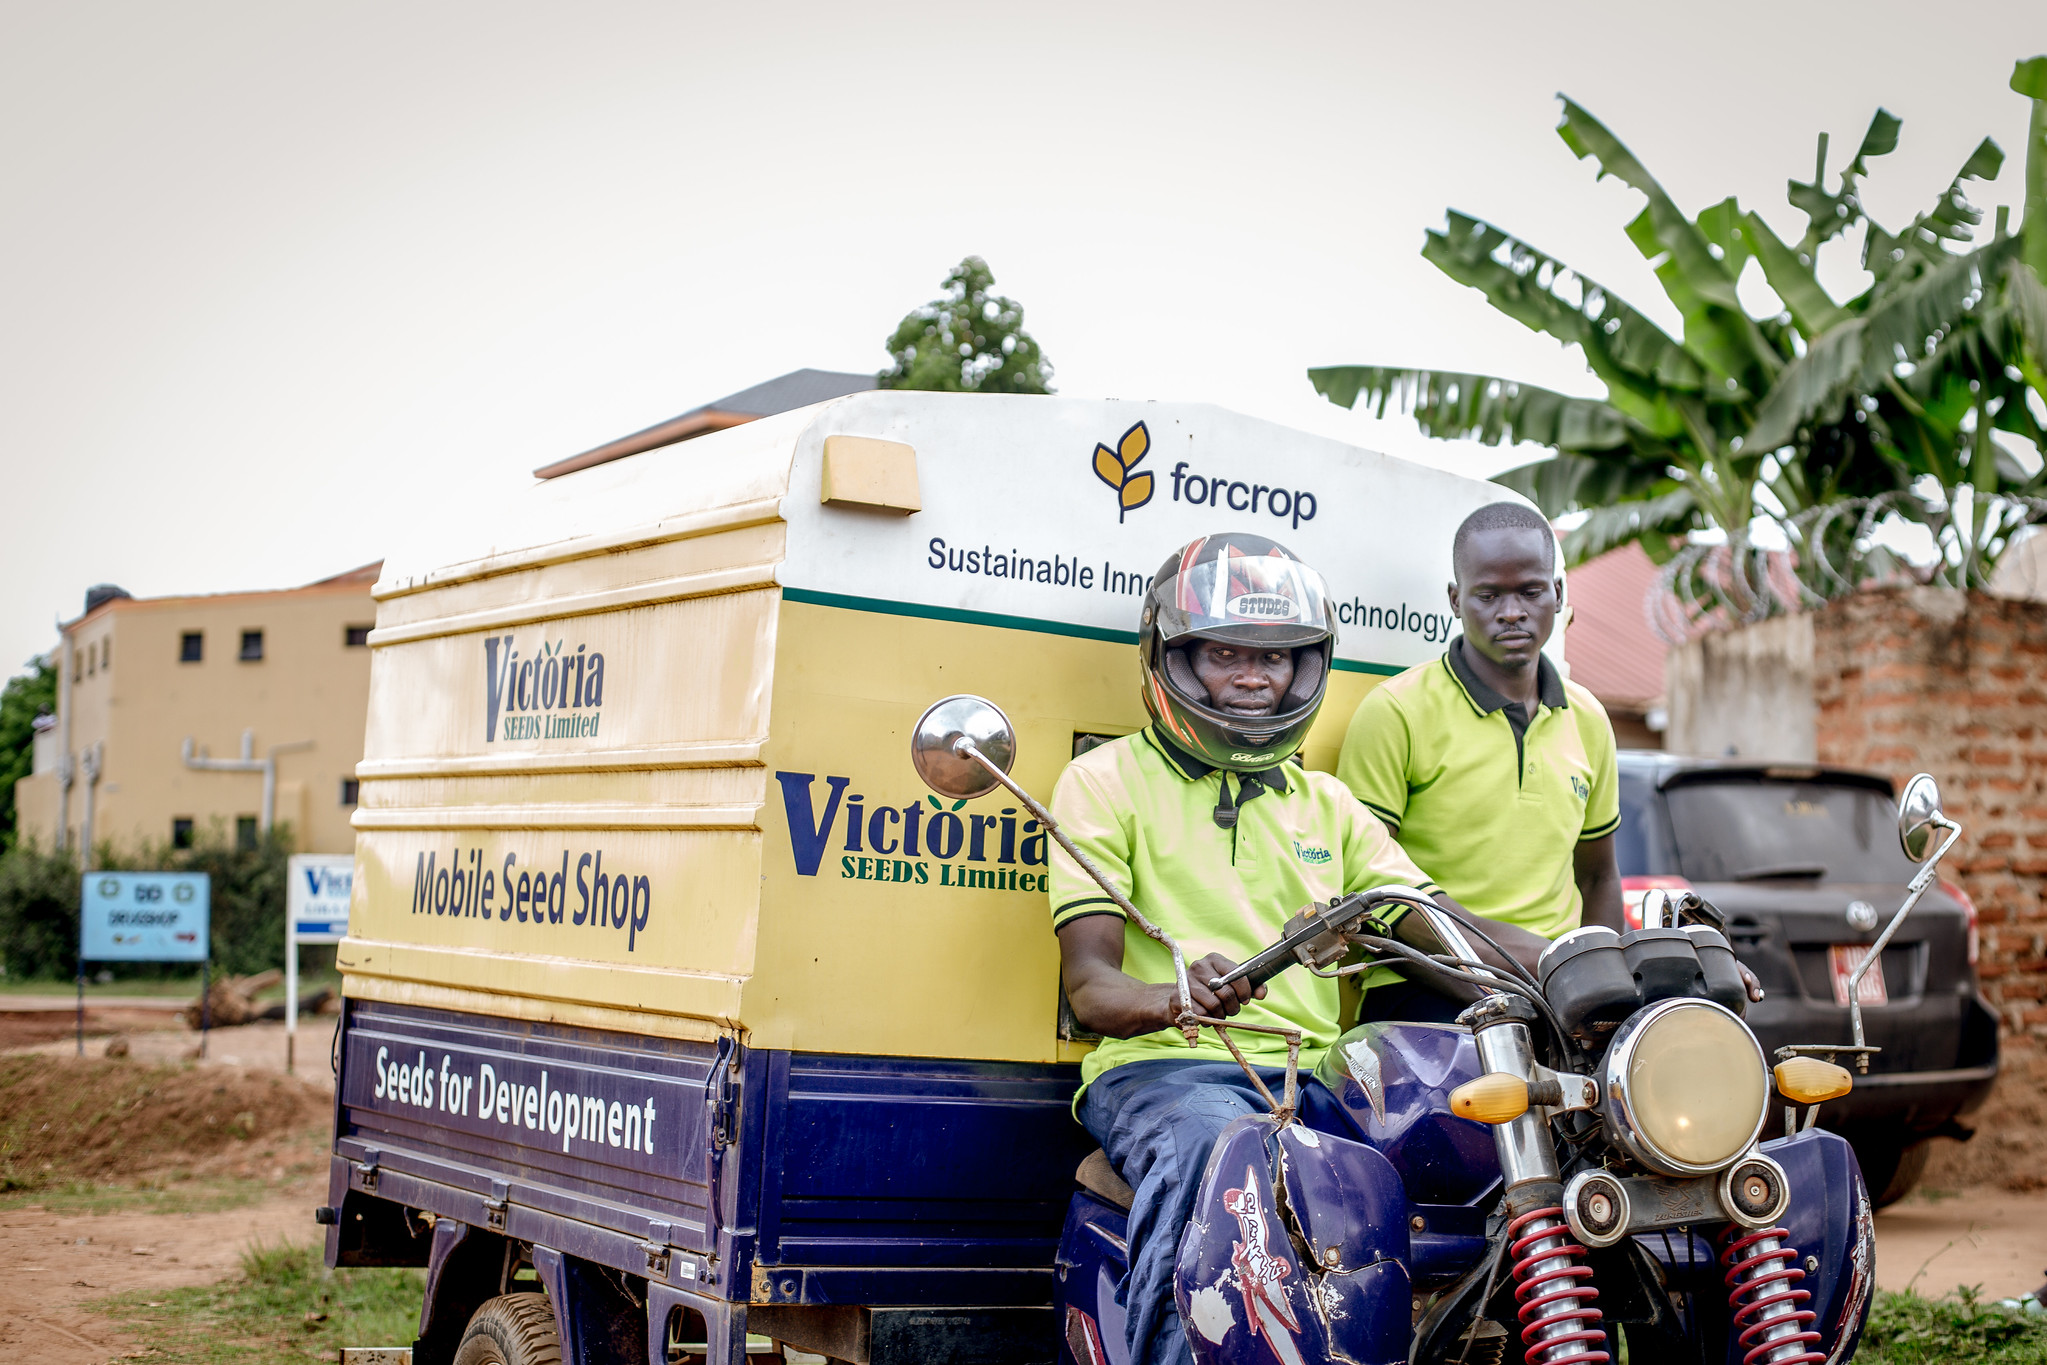 La tienda móvil de semillas de Victoria Seeds Company facilita el acceso a variedades mejoradas de maíz a los agricultores de aldeas remotas de Uganda. (Foto: Kipenz Films for CIMMYT)